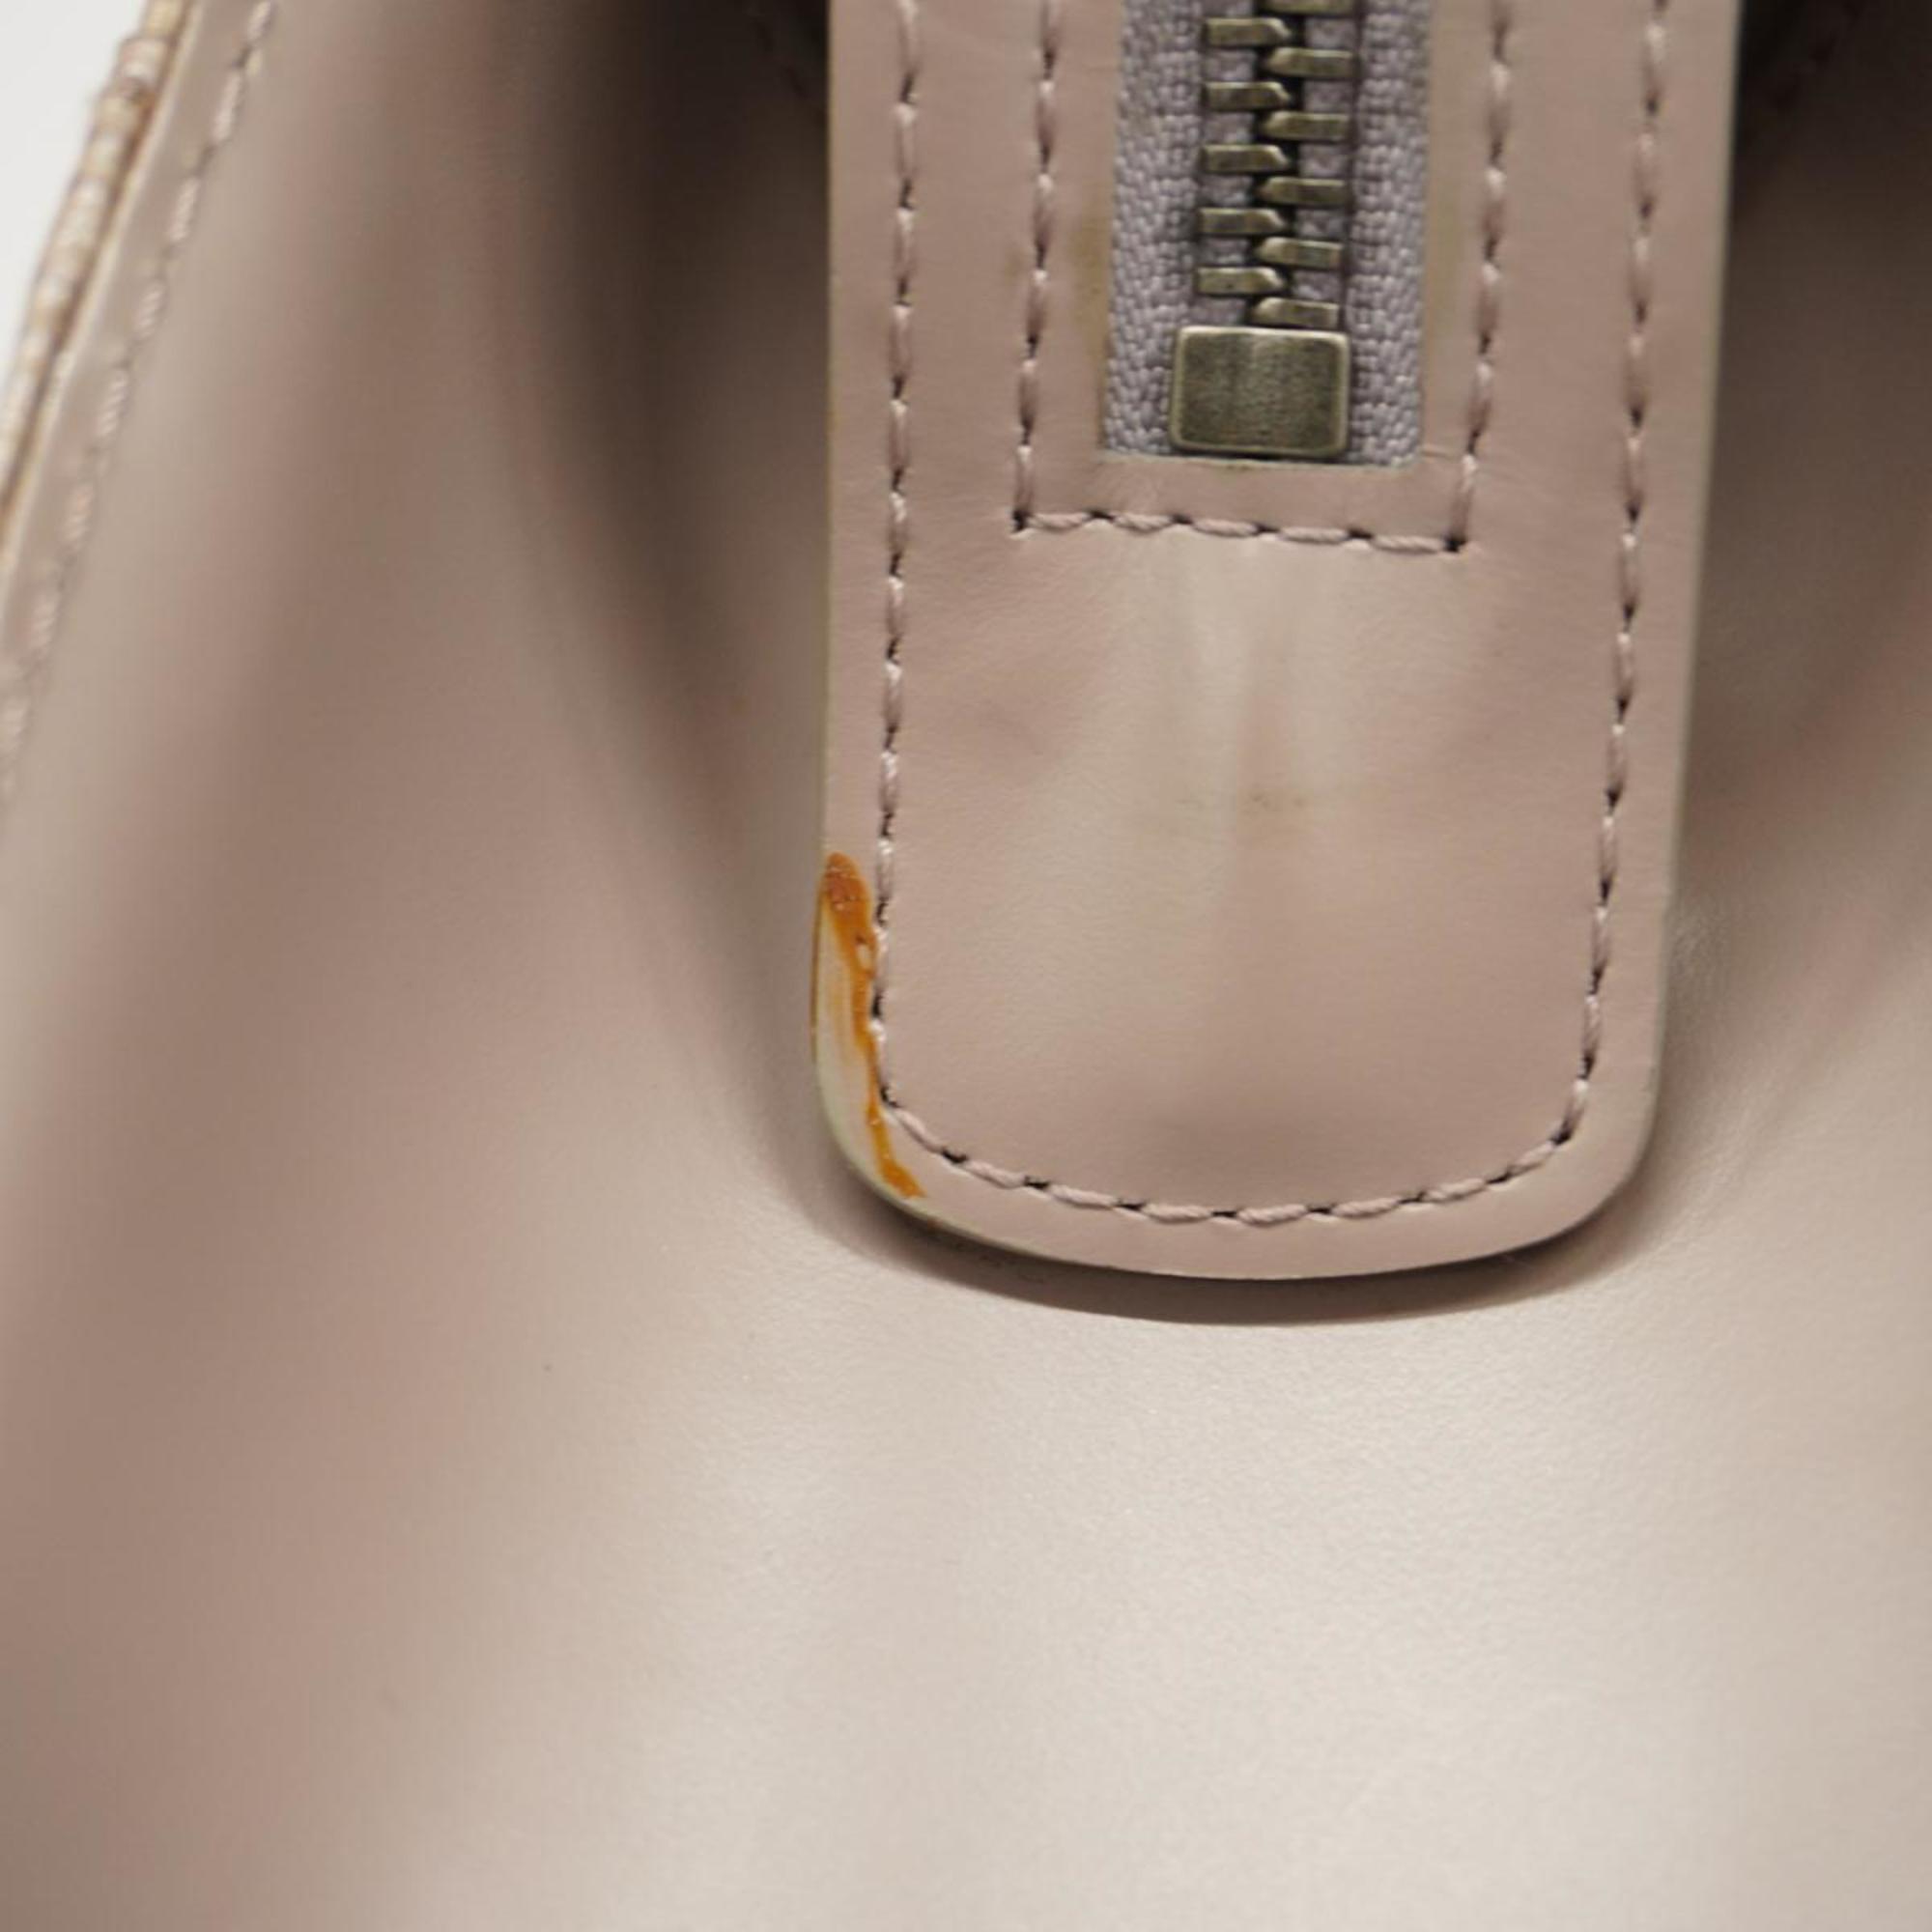 Louis Vuitton Tote Bag Epi Croisette PM M5249B Lilac Ladies